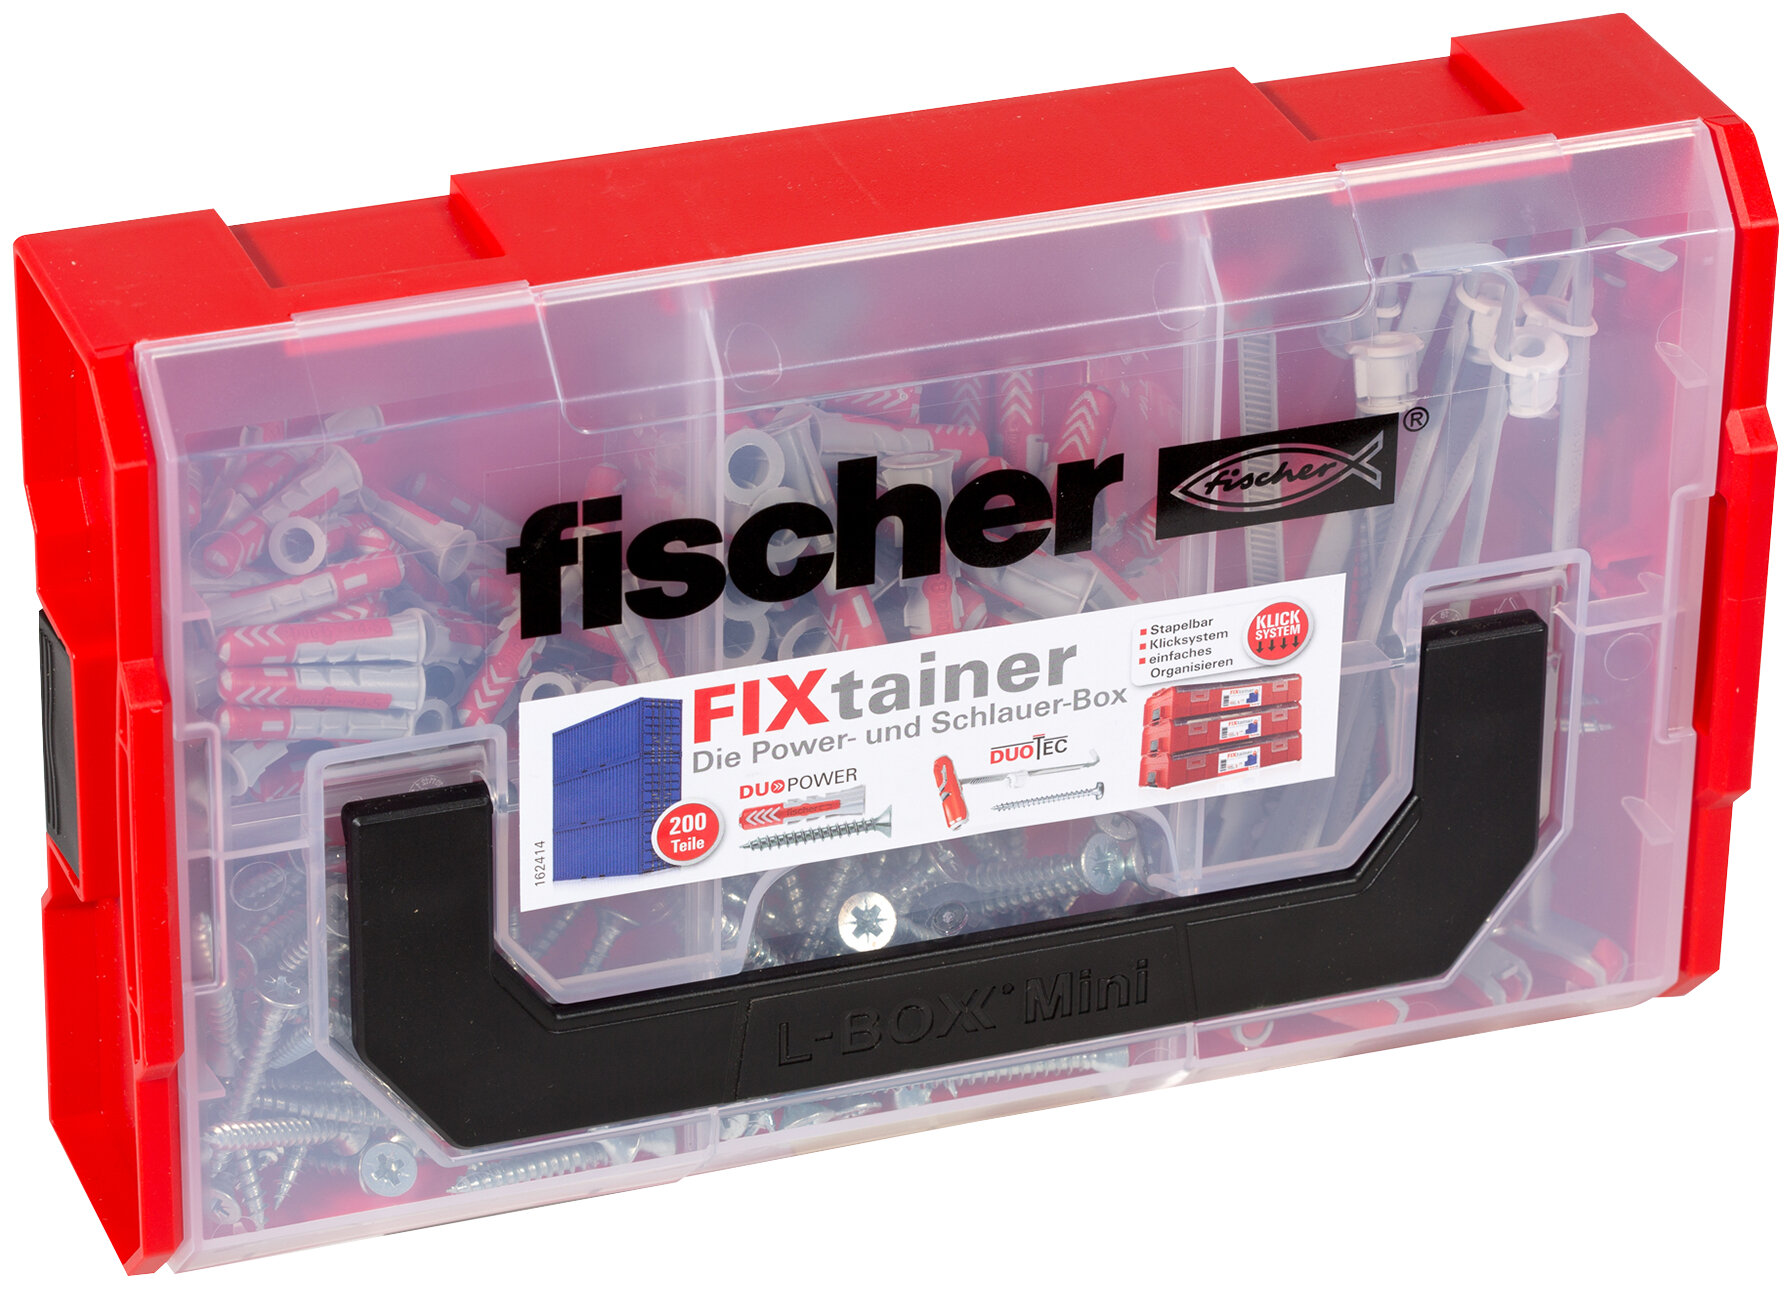 FIXtainer Power- und Schlauer Box